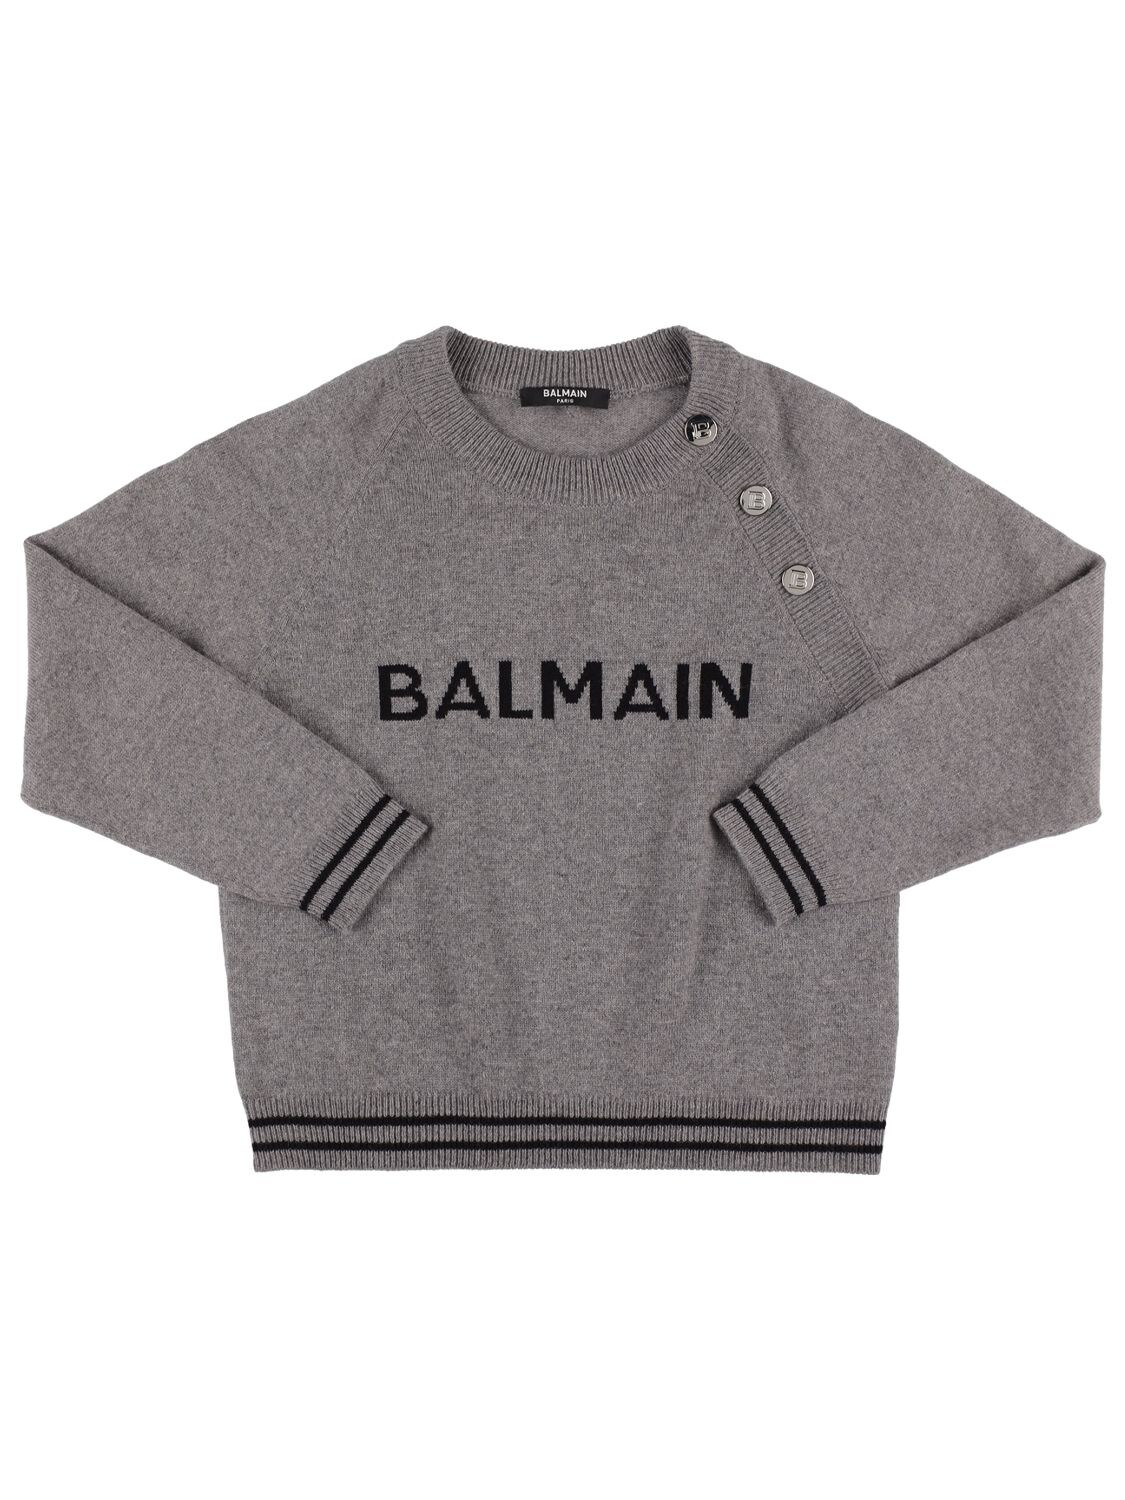 Balmain Kids' Wool Blend Knit Jumper In Grey